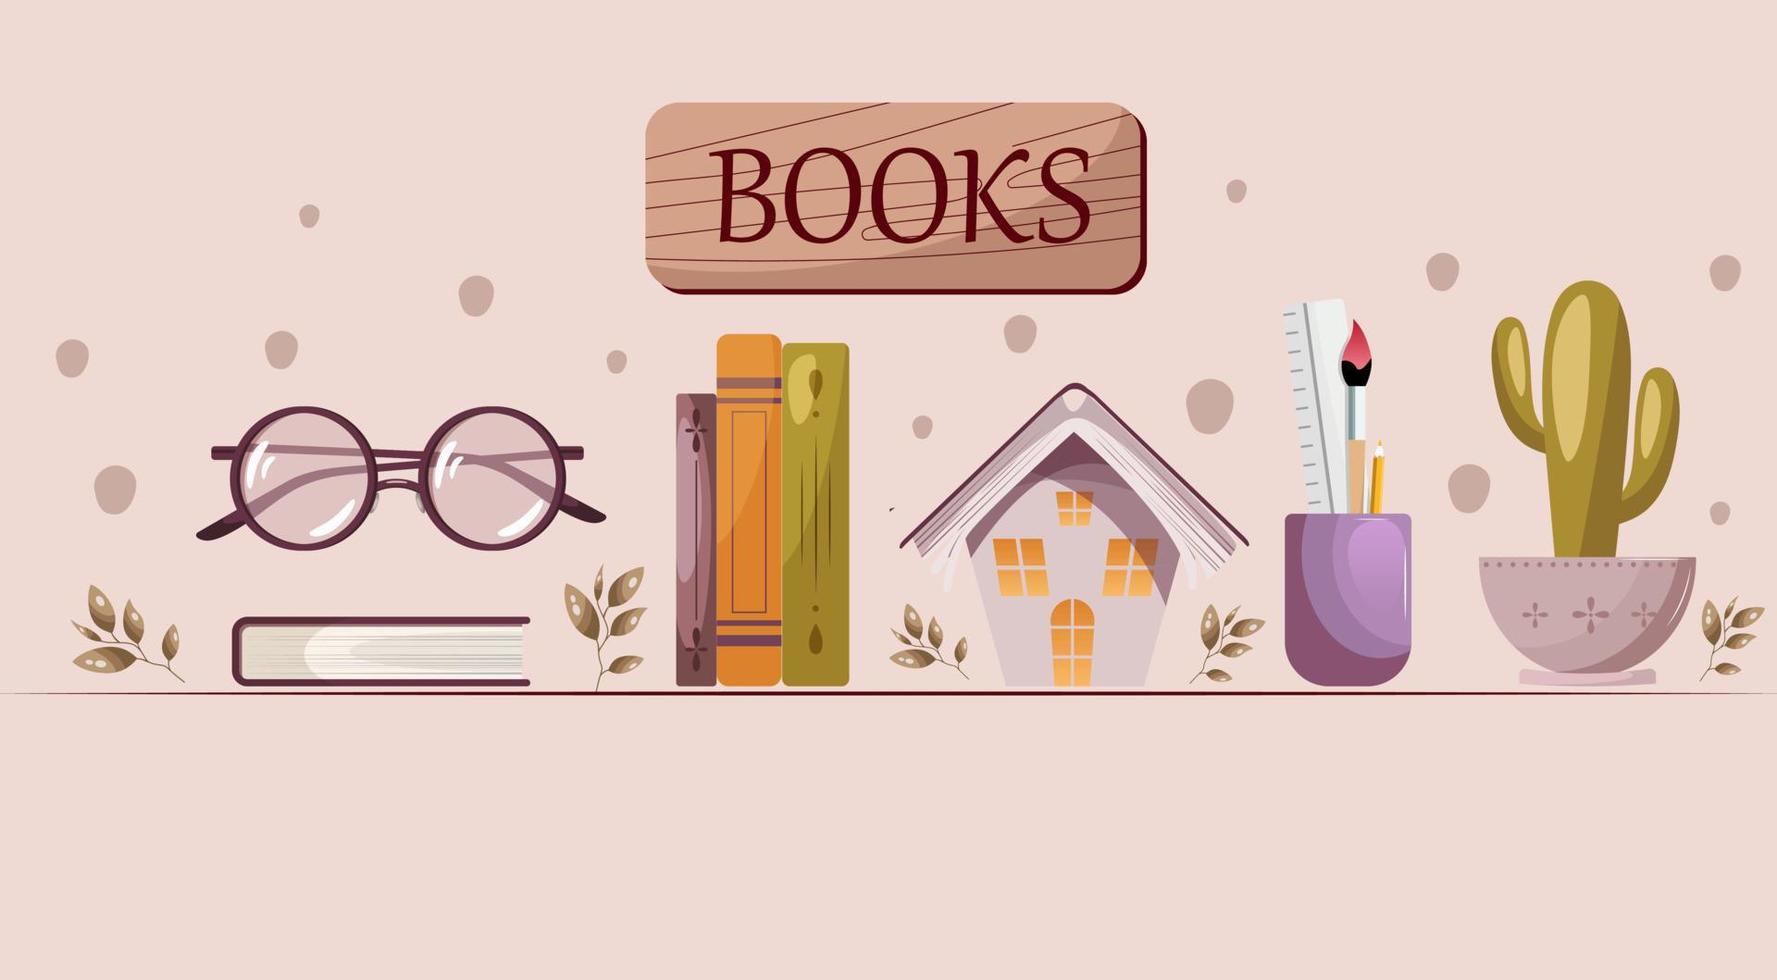 bokhylla med böcker, dekorativ hus, inlagd växt. bokhandel, bokhandel, bok älskare begrepp. isolerat vektor illustration.